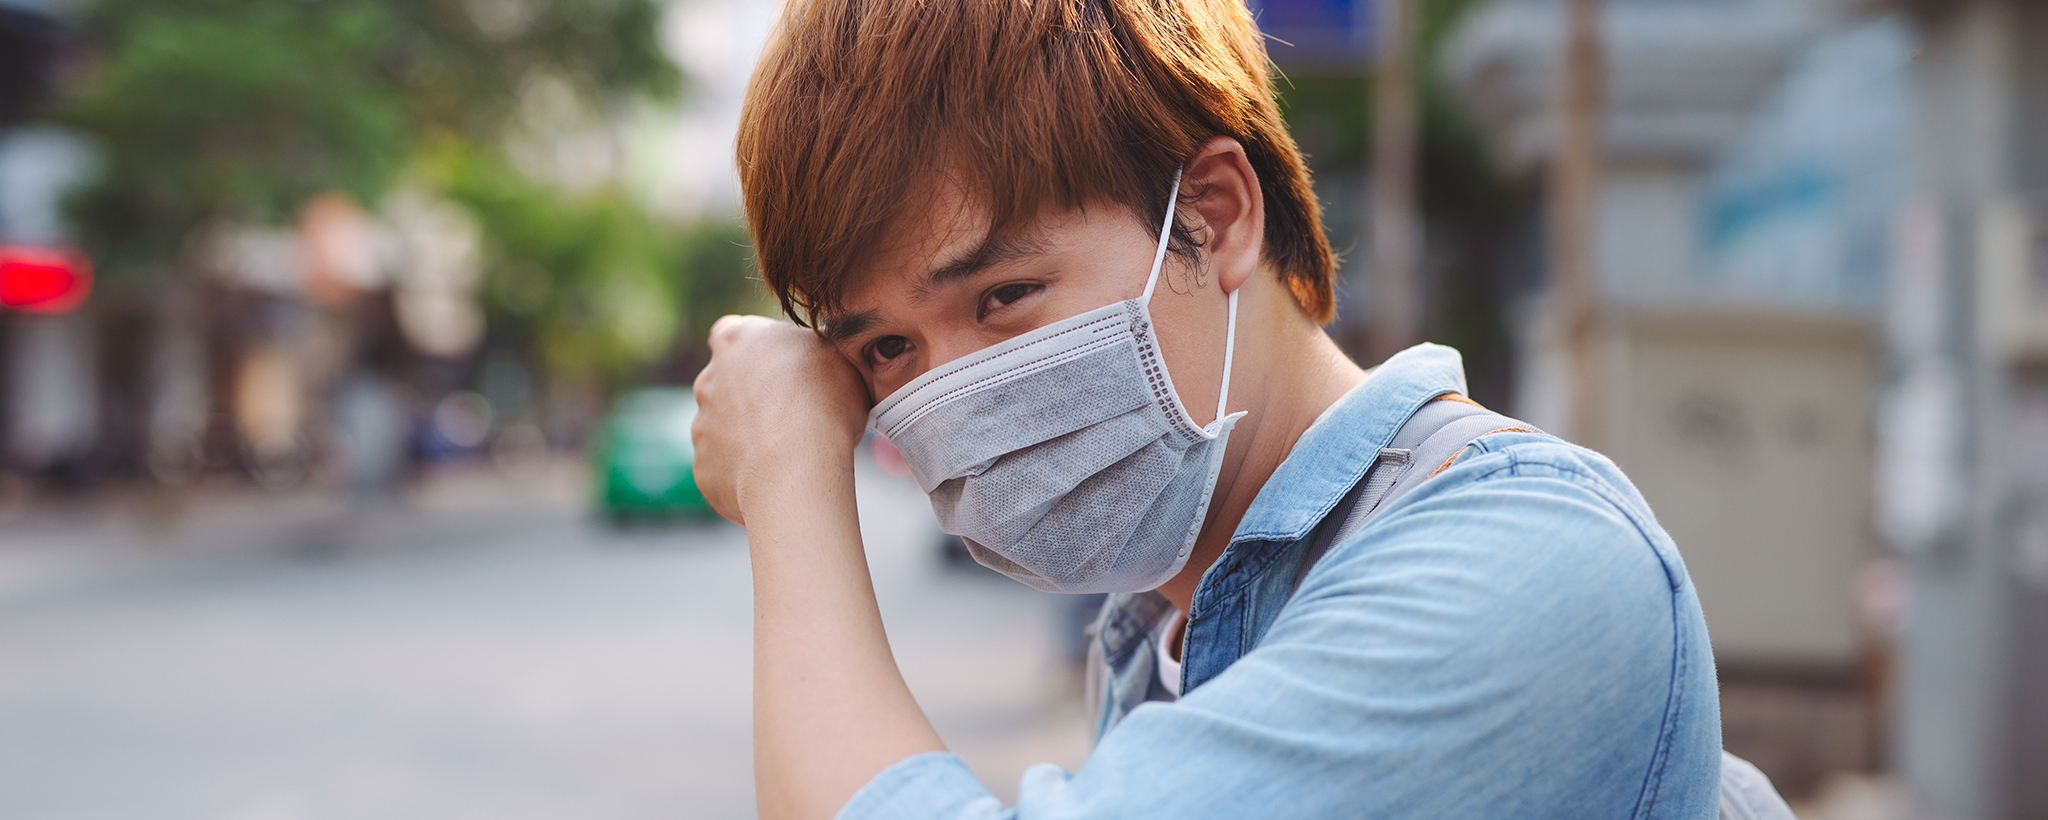 Un hombre en la calle con una máscara facial para protegerse de la enfermedad